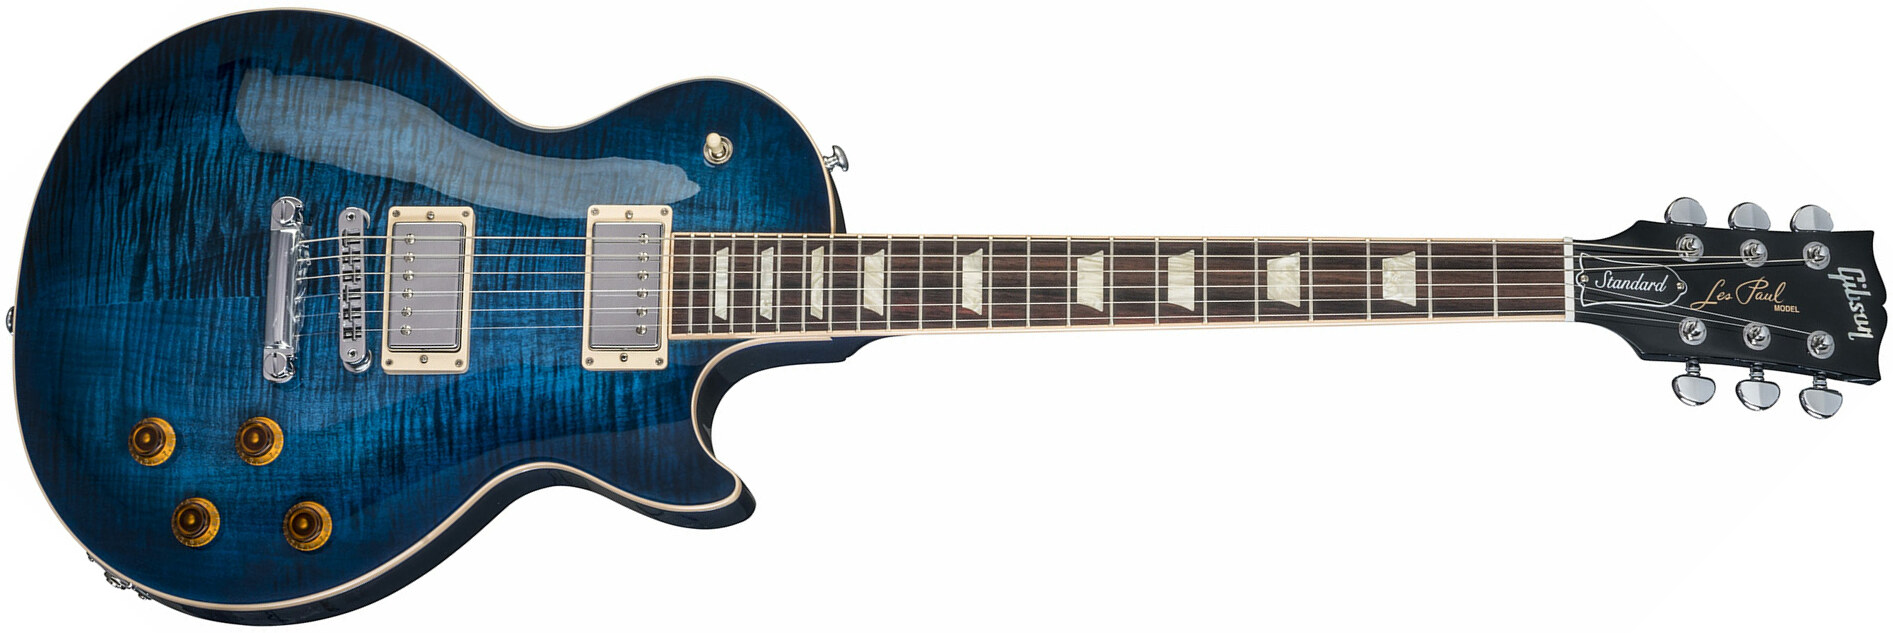 Gibson Les Paul Standard - Cobalt Burst - Enkel gesneden elektrische gitaar - Main picture